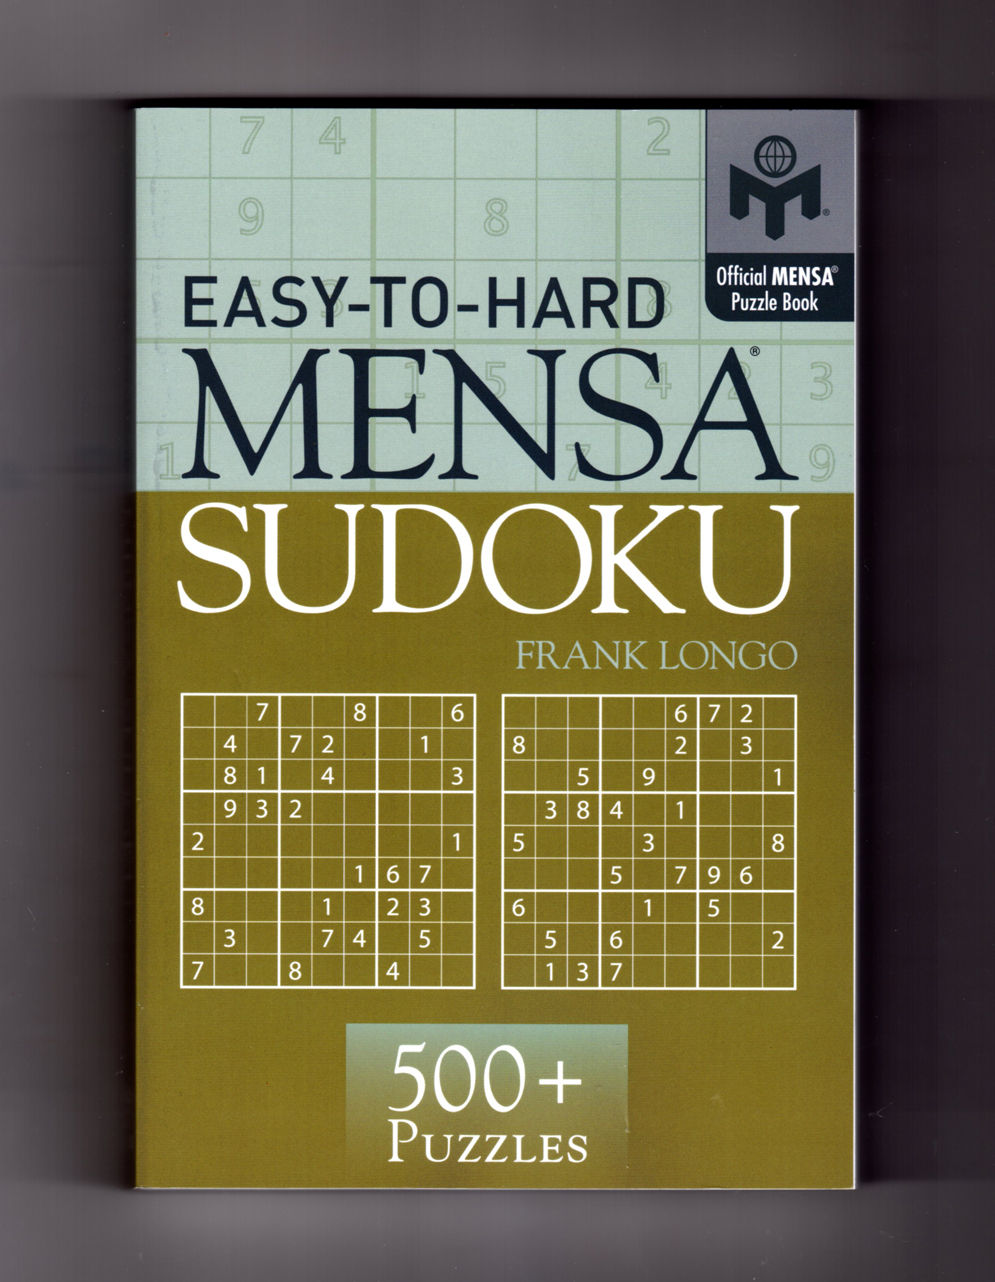 mensa guide to solving sudoku